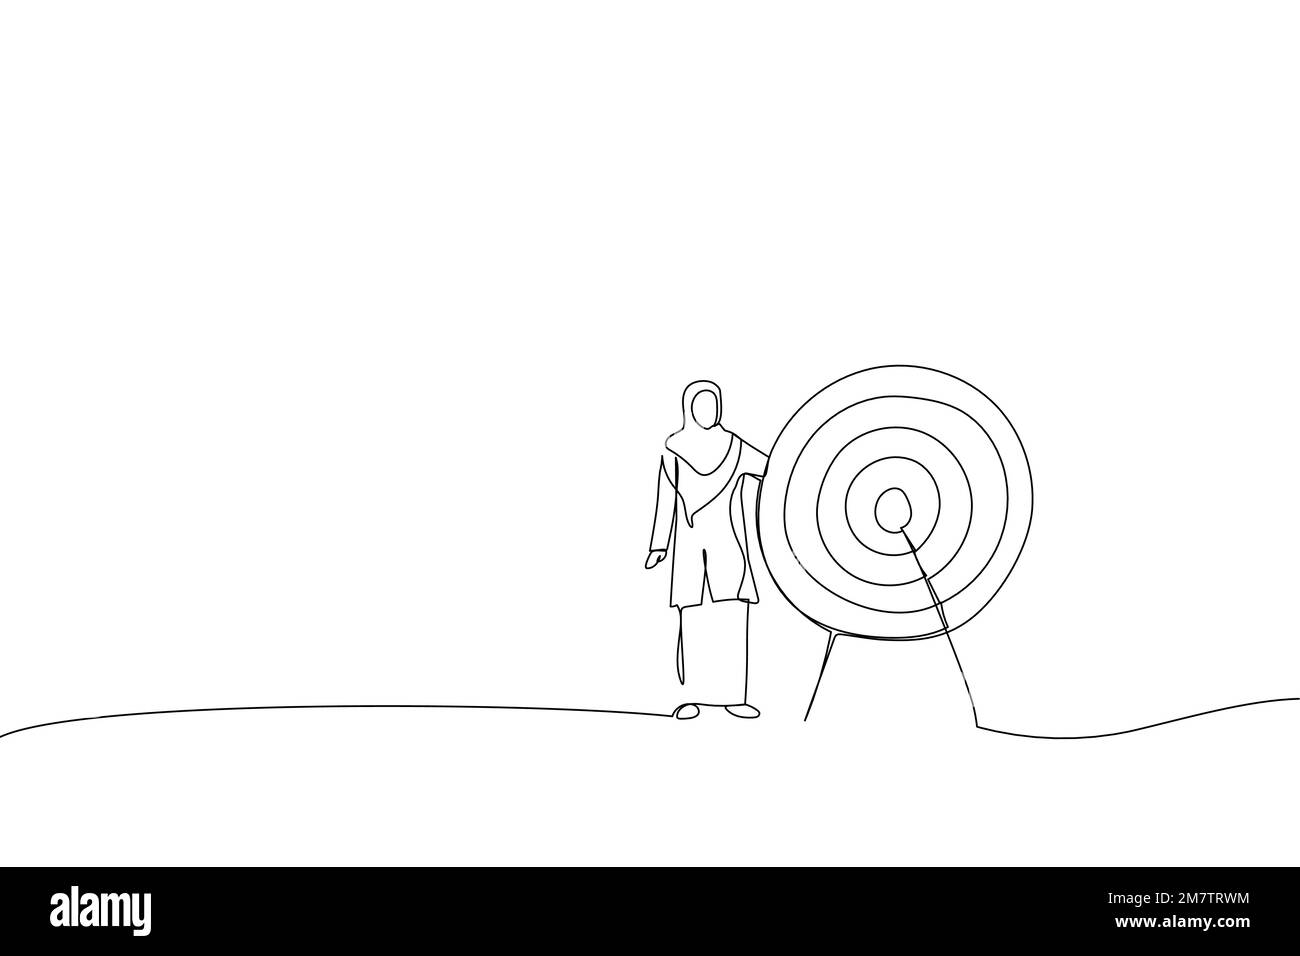 Ein Cartoon von muslimischer Geschäftsfrau, die neben einem riesigen Ziel steht, mit einem Pfeil in der Mitte, Pfeil im Bullseye. Metapher für das Erreichen von Zielen und Objektiv Stock Vektor